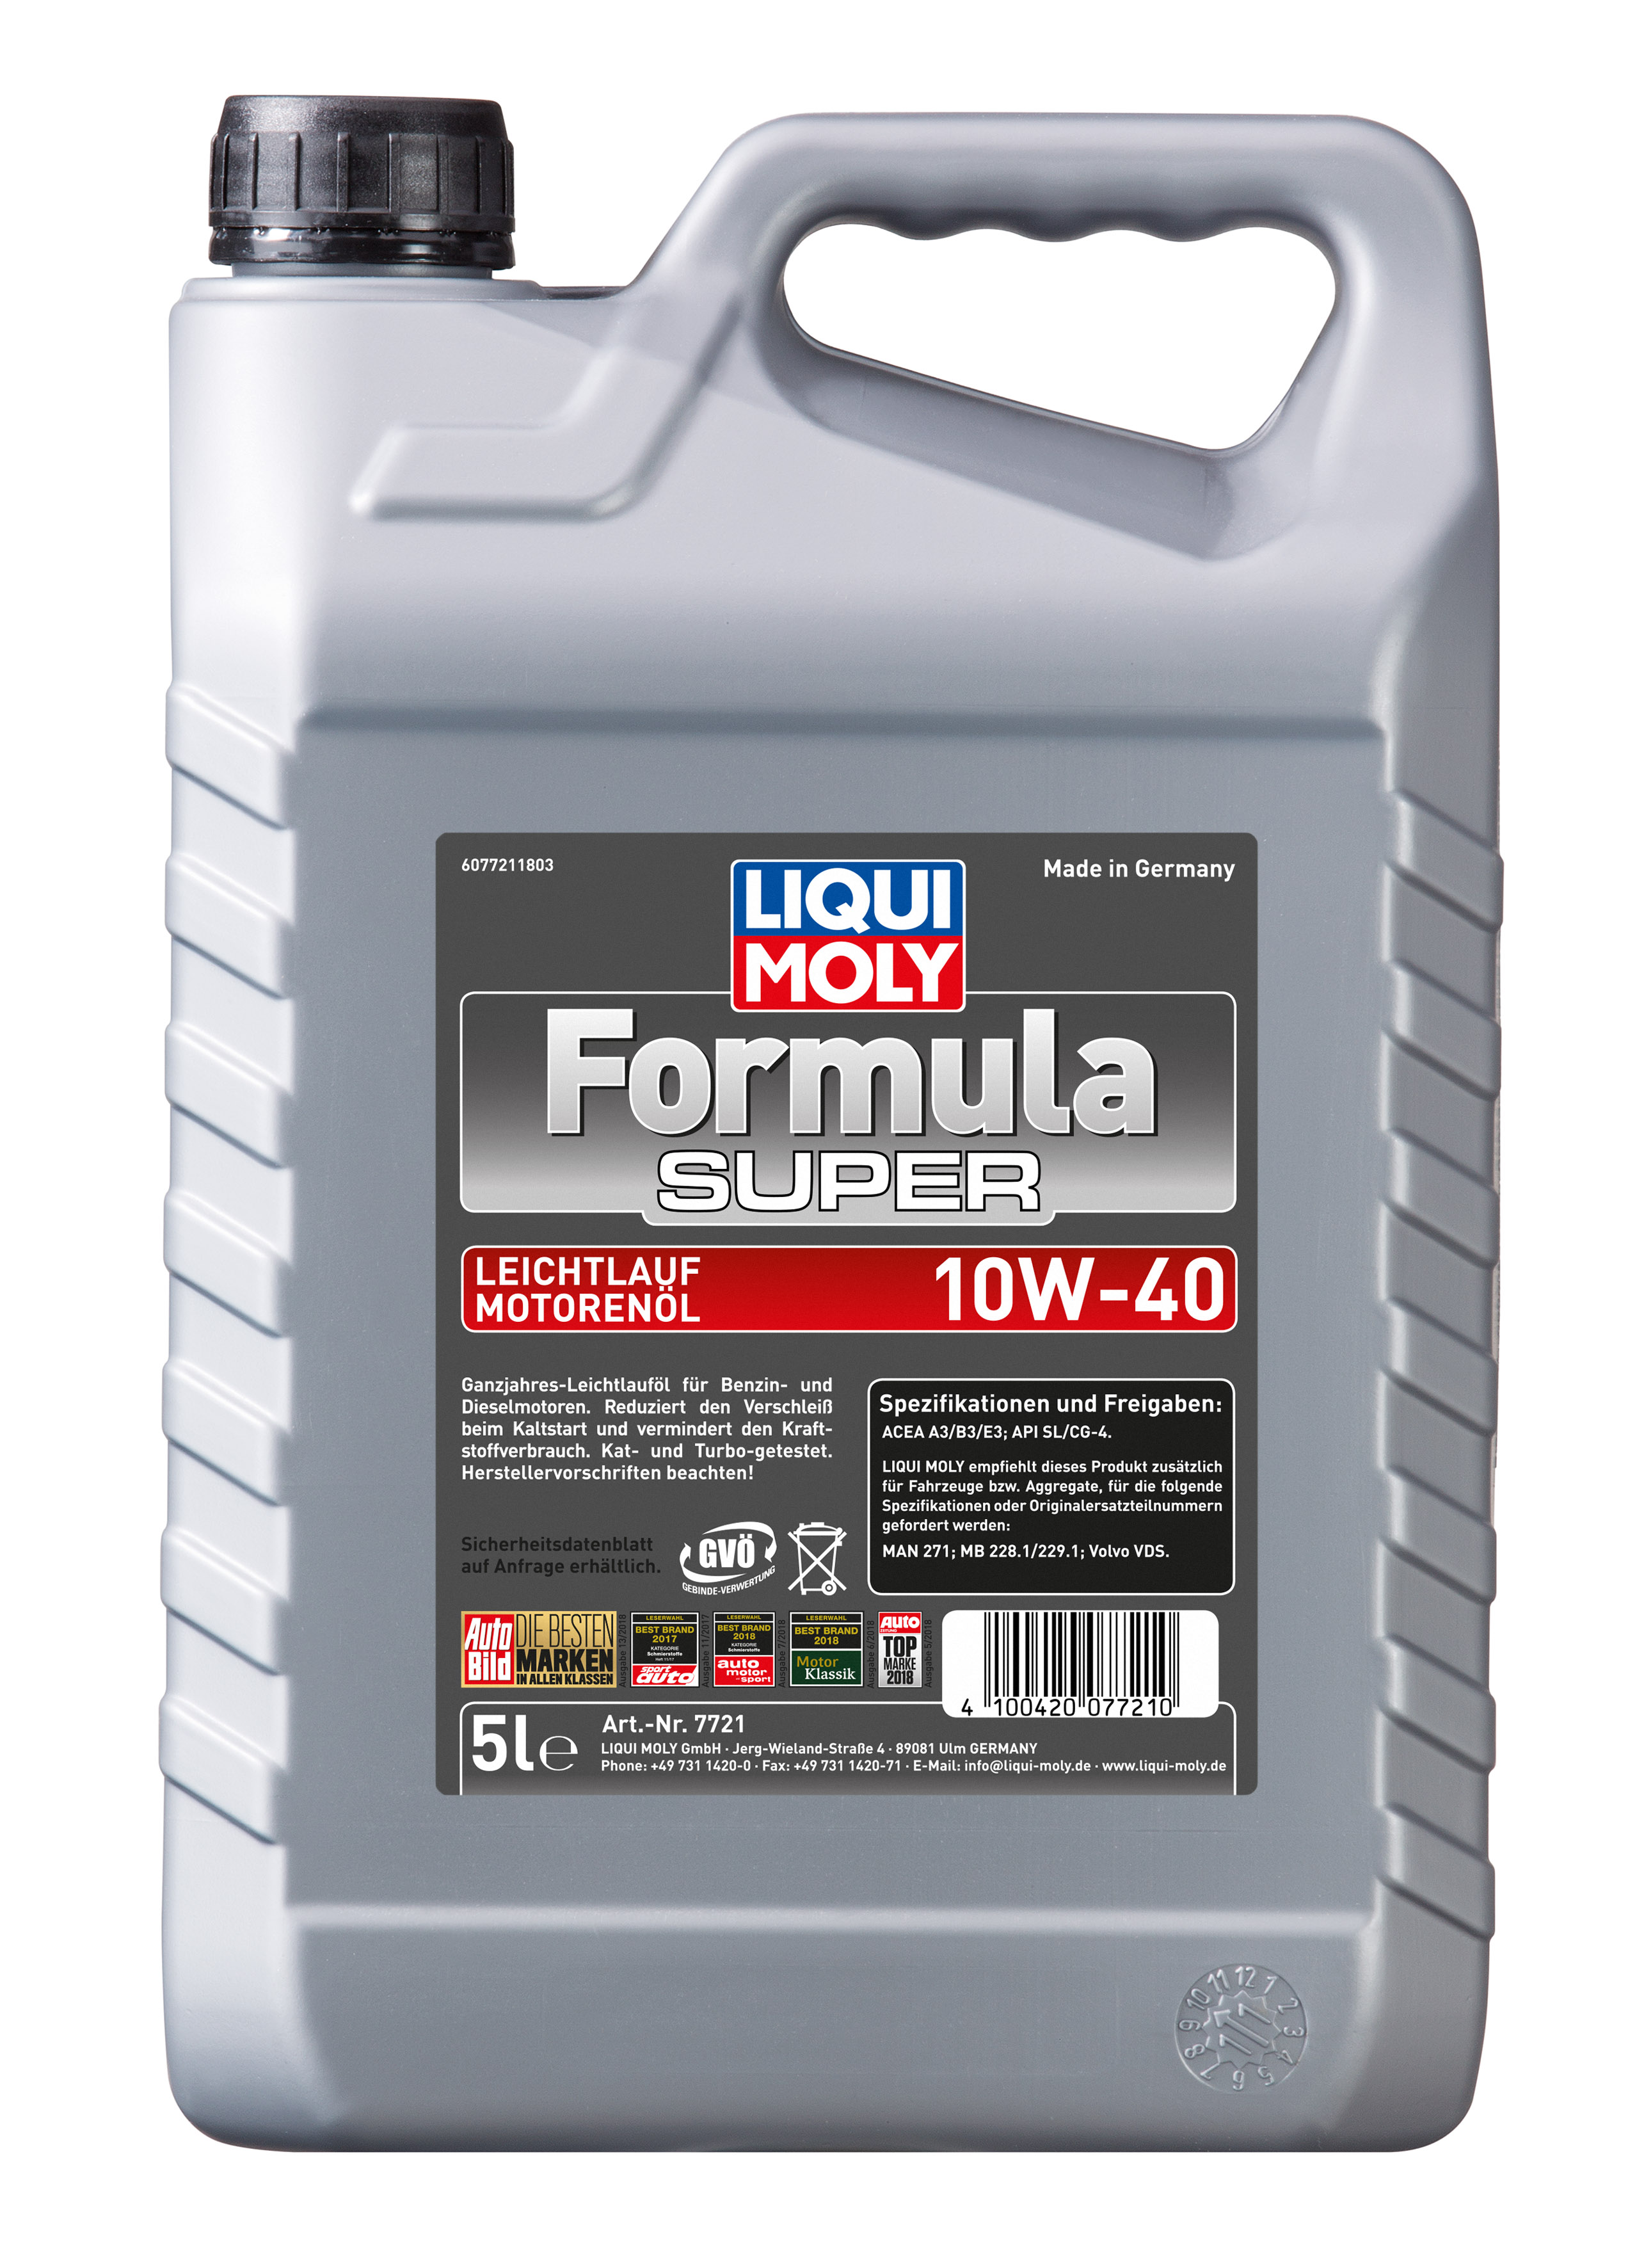 LIQUI MOLY FORMULA SUPER 10W-40 5L